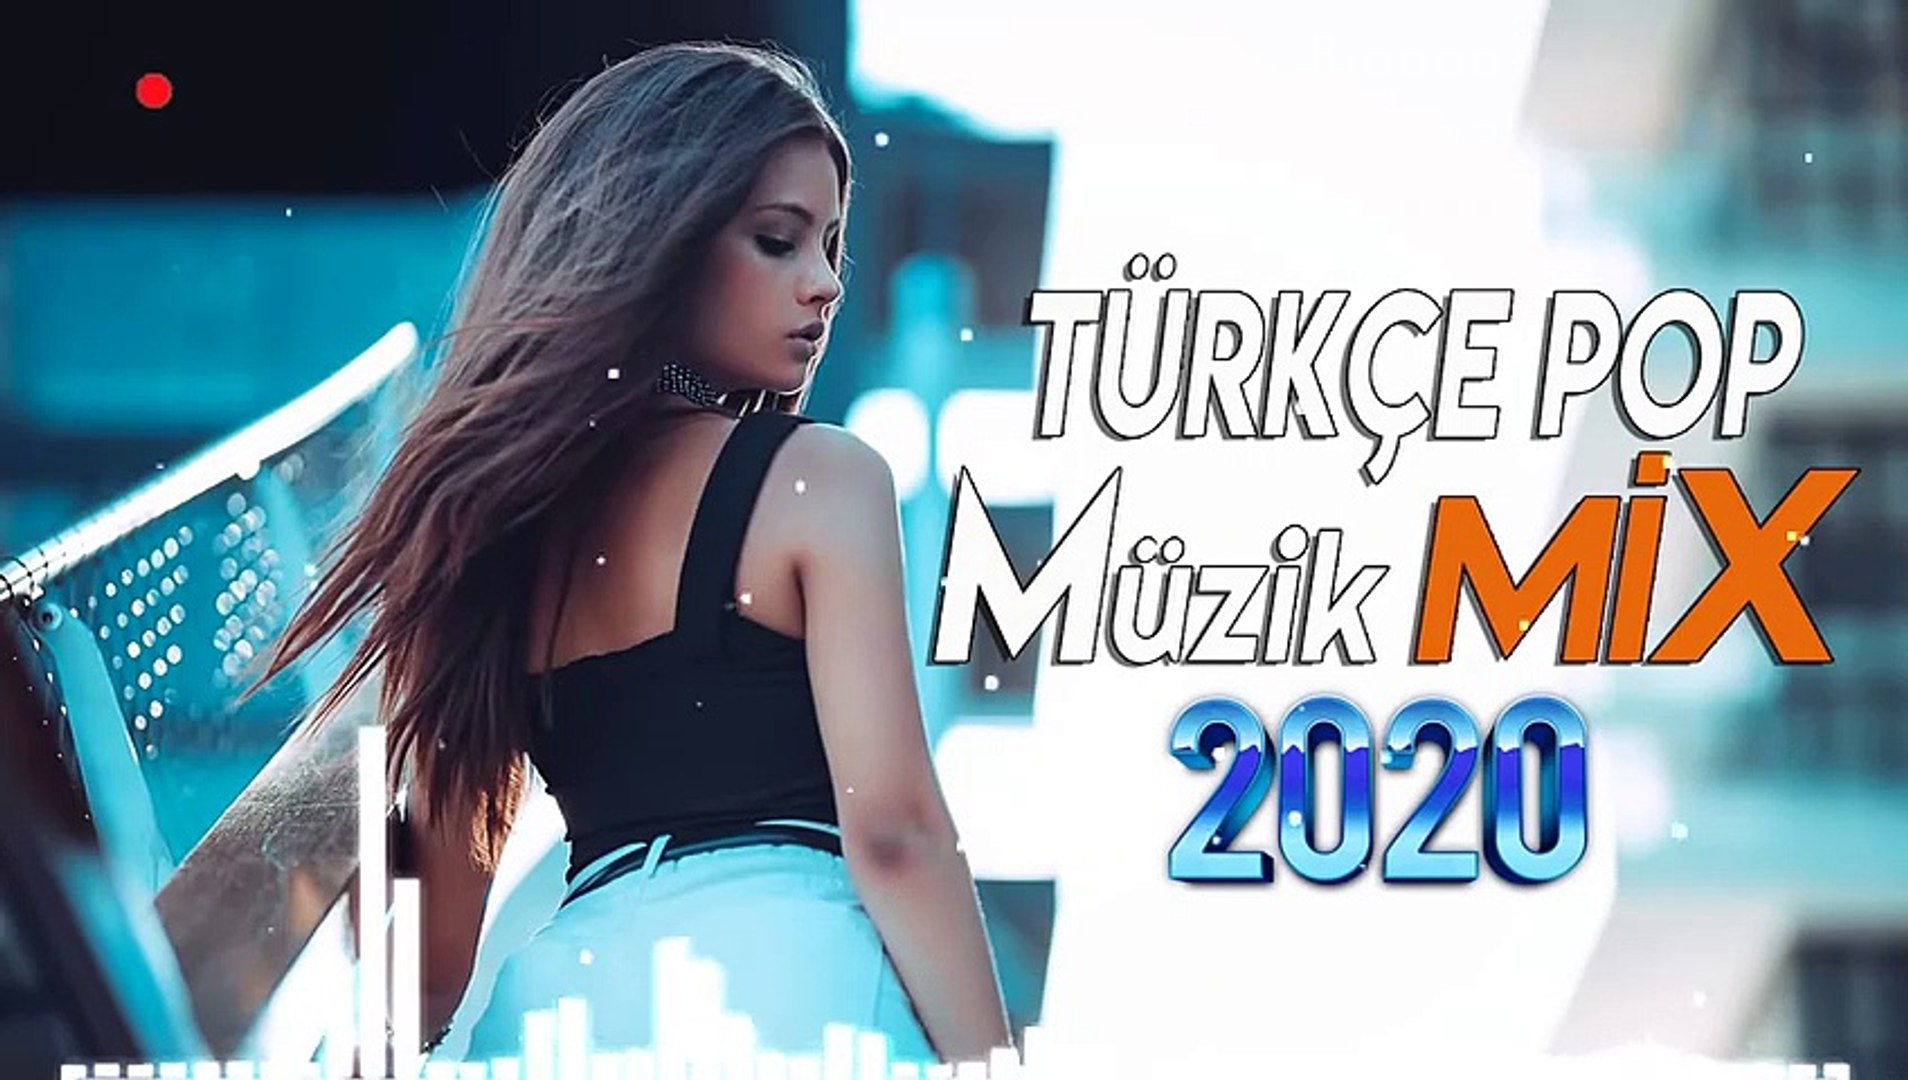 Özel Türkçe Pop Şarkılar 2020 - türkçe remix - türkçe pop müzik remix - en türkçe pop şarkılar 1 - Dailymotion